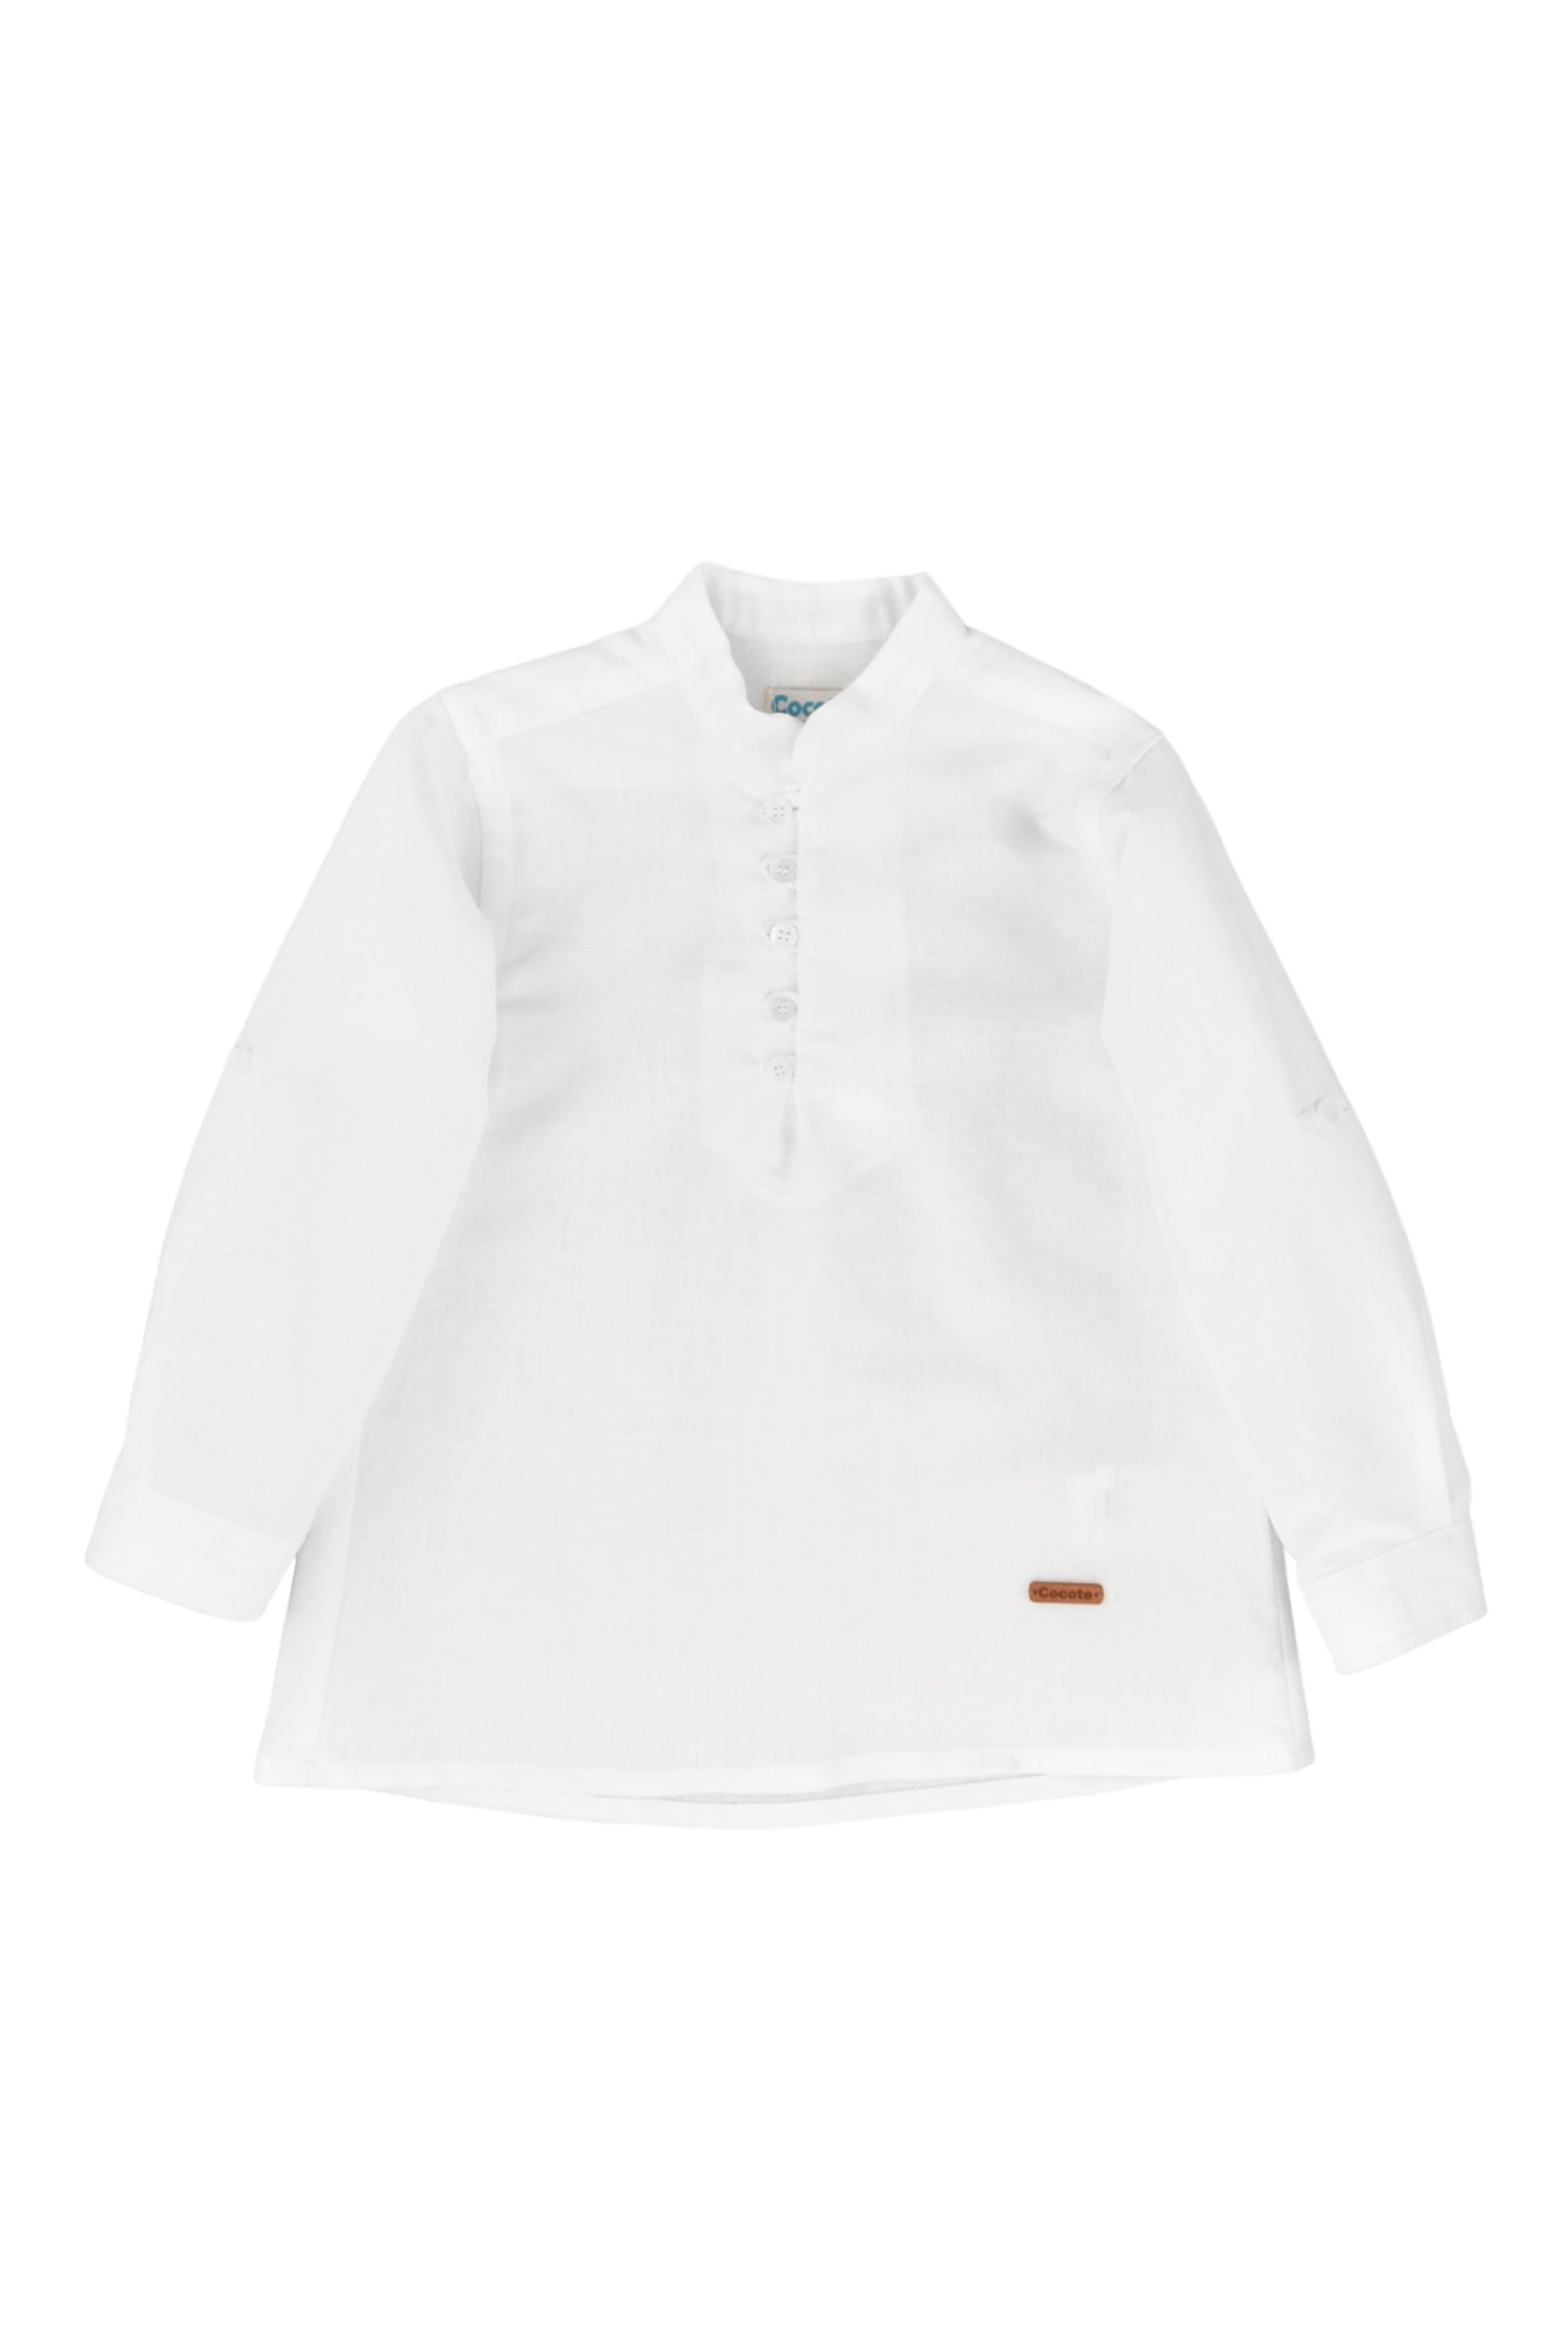 Camisa de niño color blanco Cocote & Charanga VERANO/Charanga